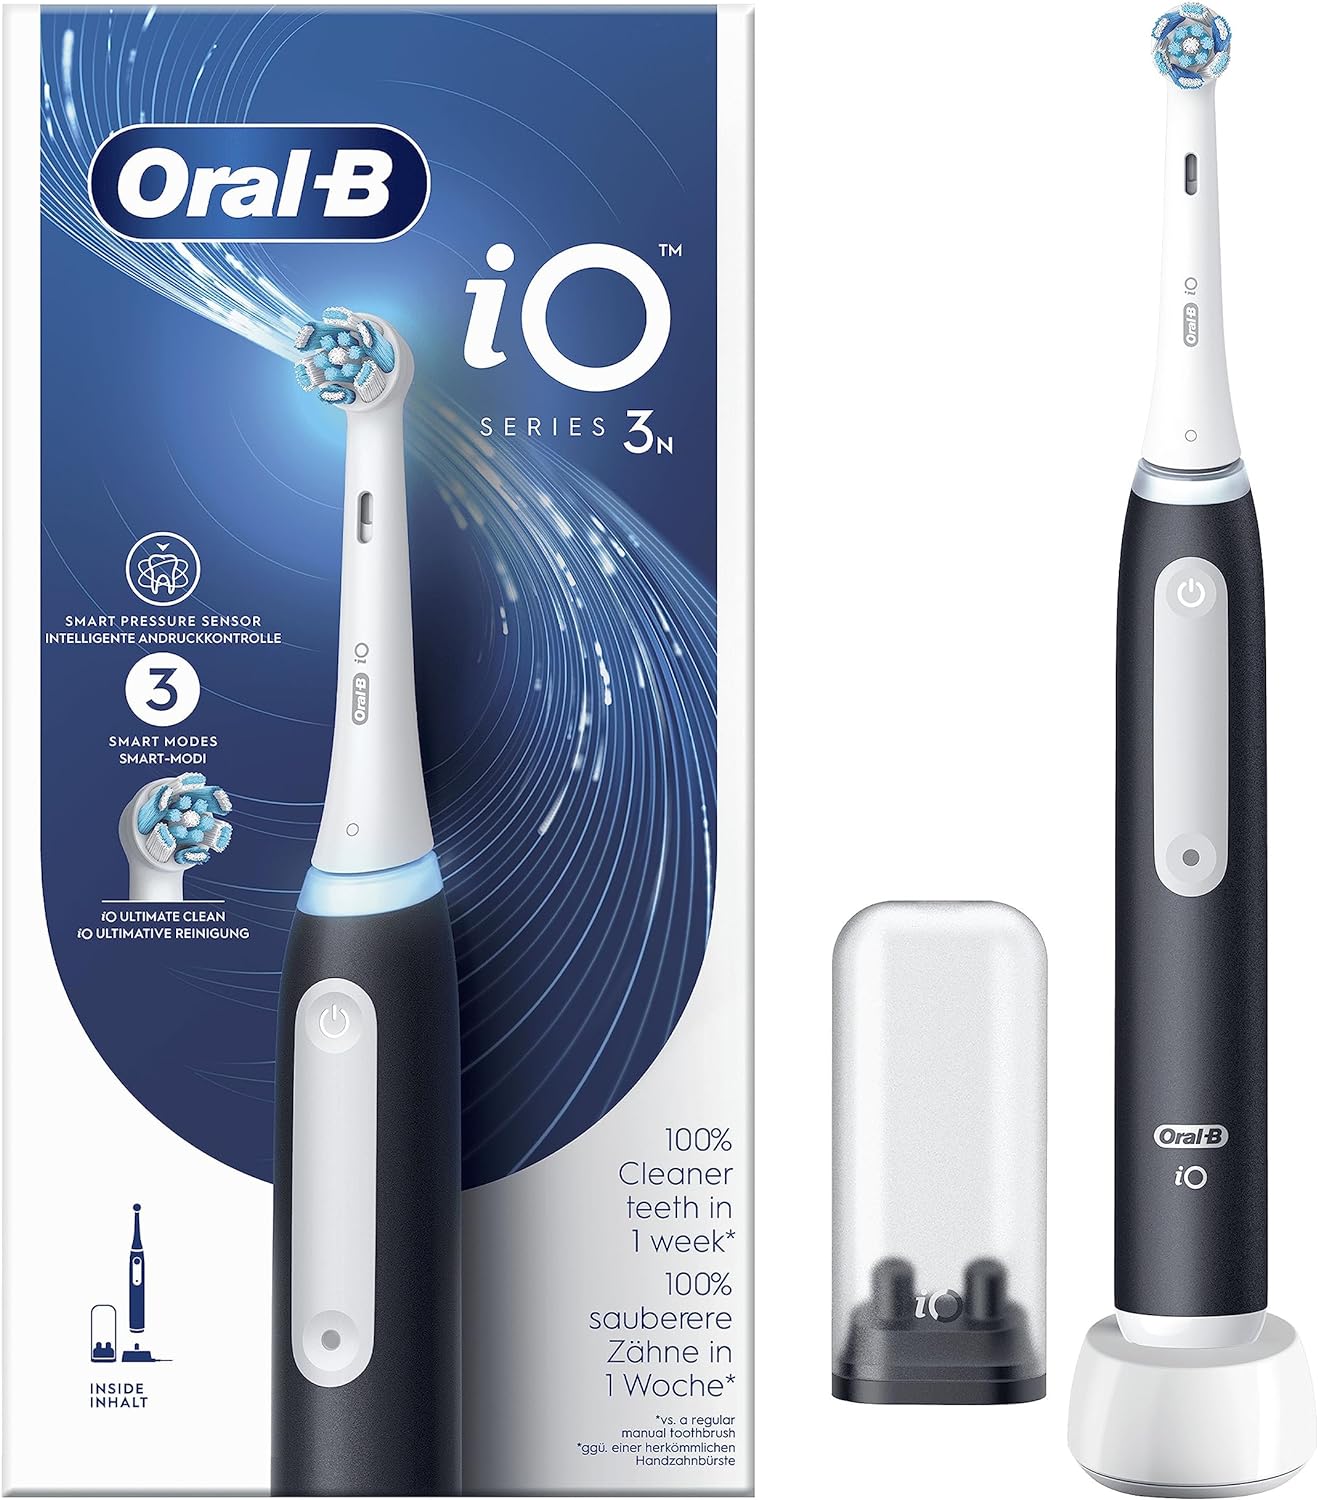 Oral-B iO 3 vs. Oral-B iO 5 vs. Oral-B iO 4 vs. Oral-B iO 7